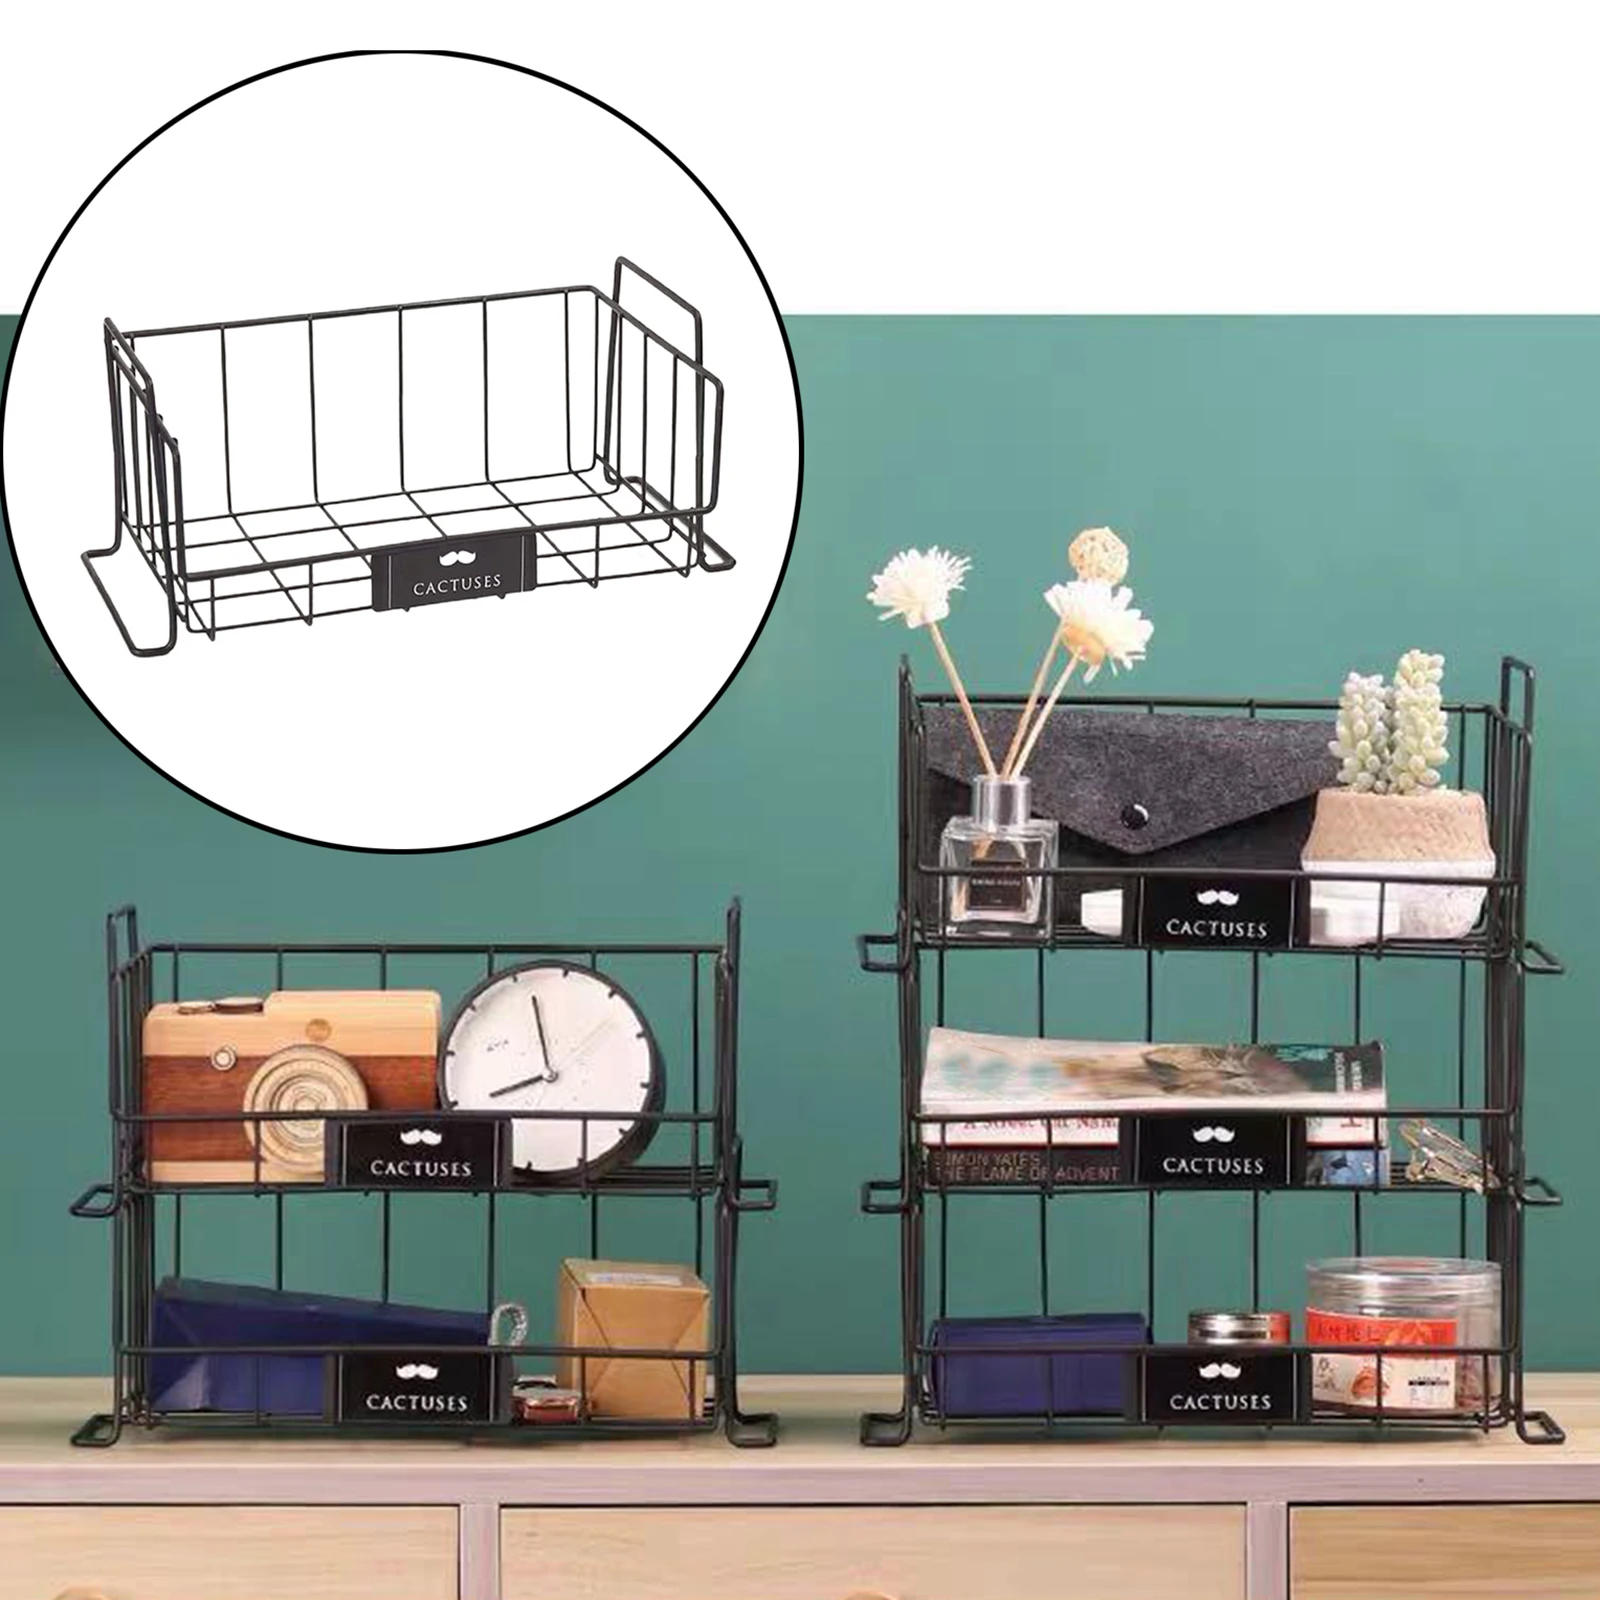 Household Wire Storage Basket Bins Organizer & Handles for Kitchen Bathroom Wire Basket Freezer Organizer